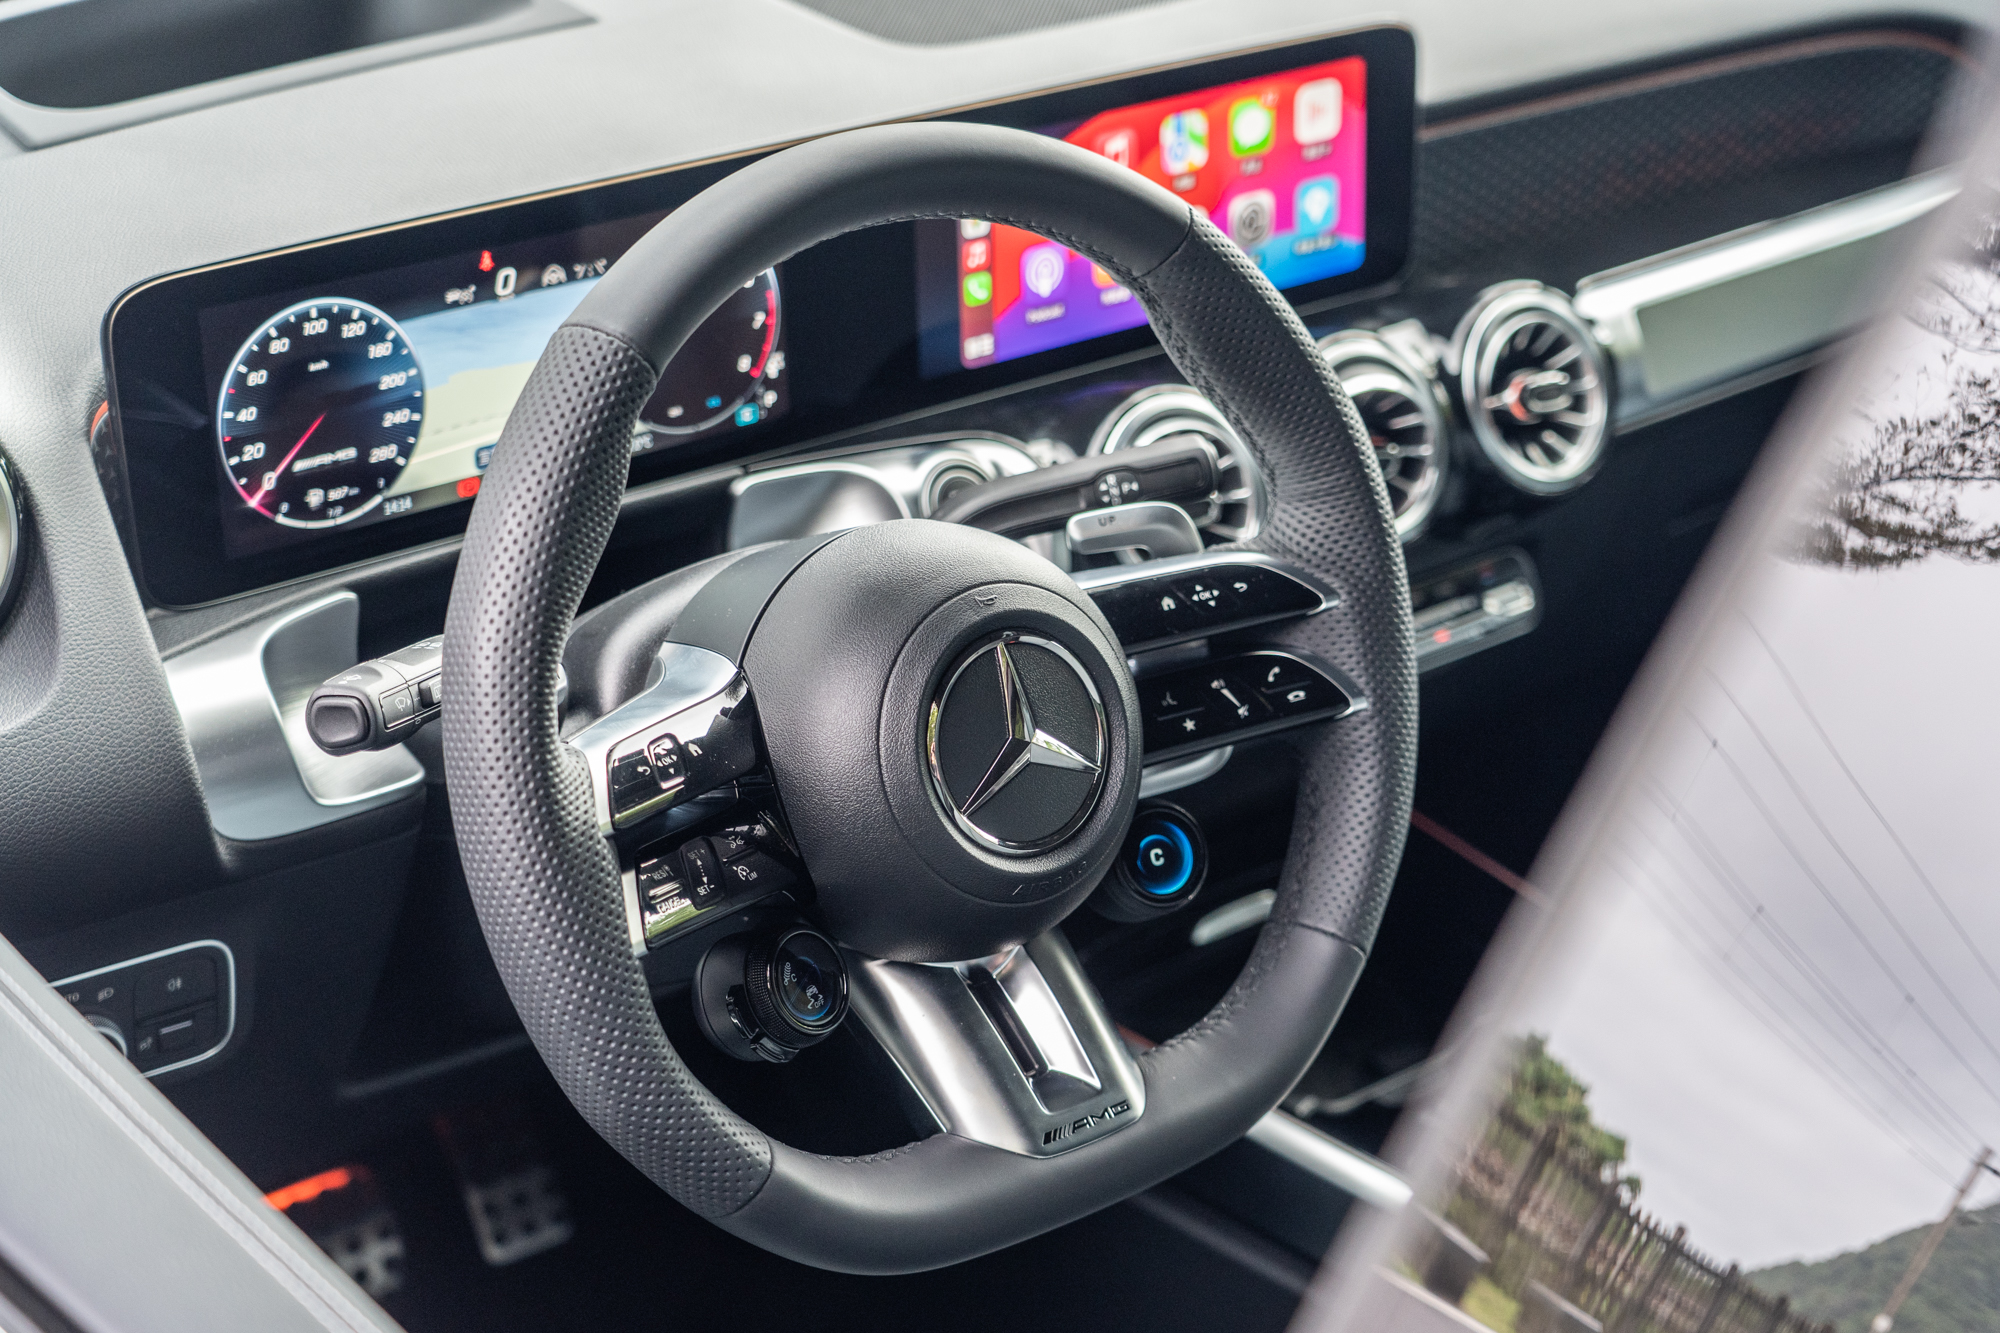 Nappa皮革的平底跑車方向盤，並將懸吊、電子操控系統與動態模式調整介面整合於方向盤左右兩側下方按鍵中。